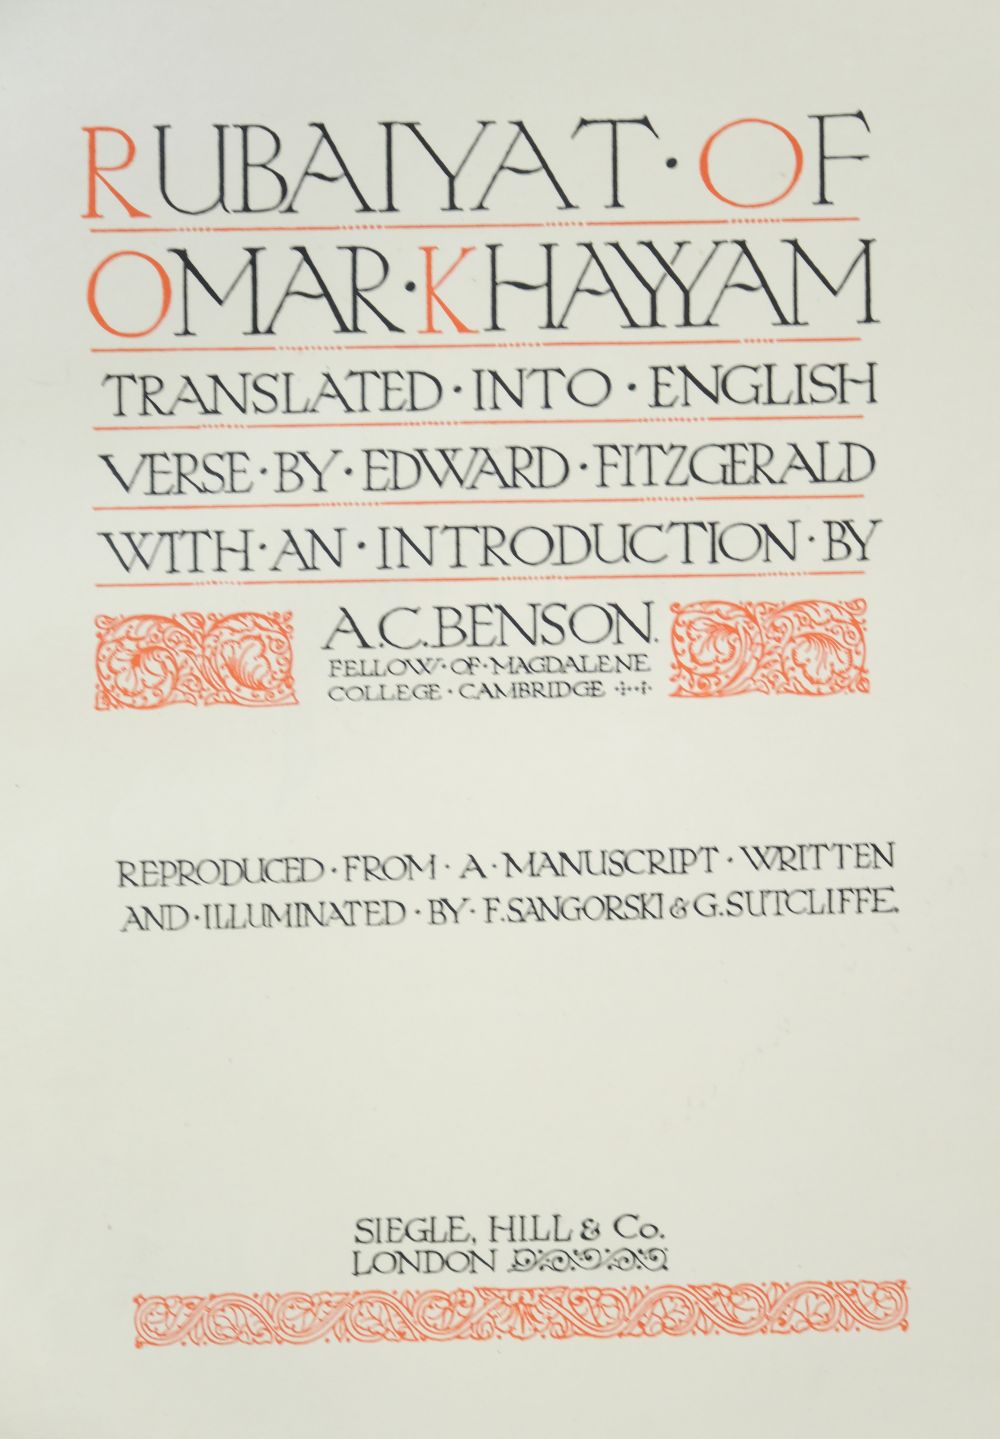 Sangorski & Sutcliffe Binding. Rubaiyat of Omar Khayyam, 1911 - Image 10 of 15